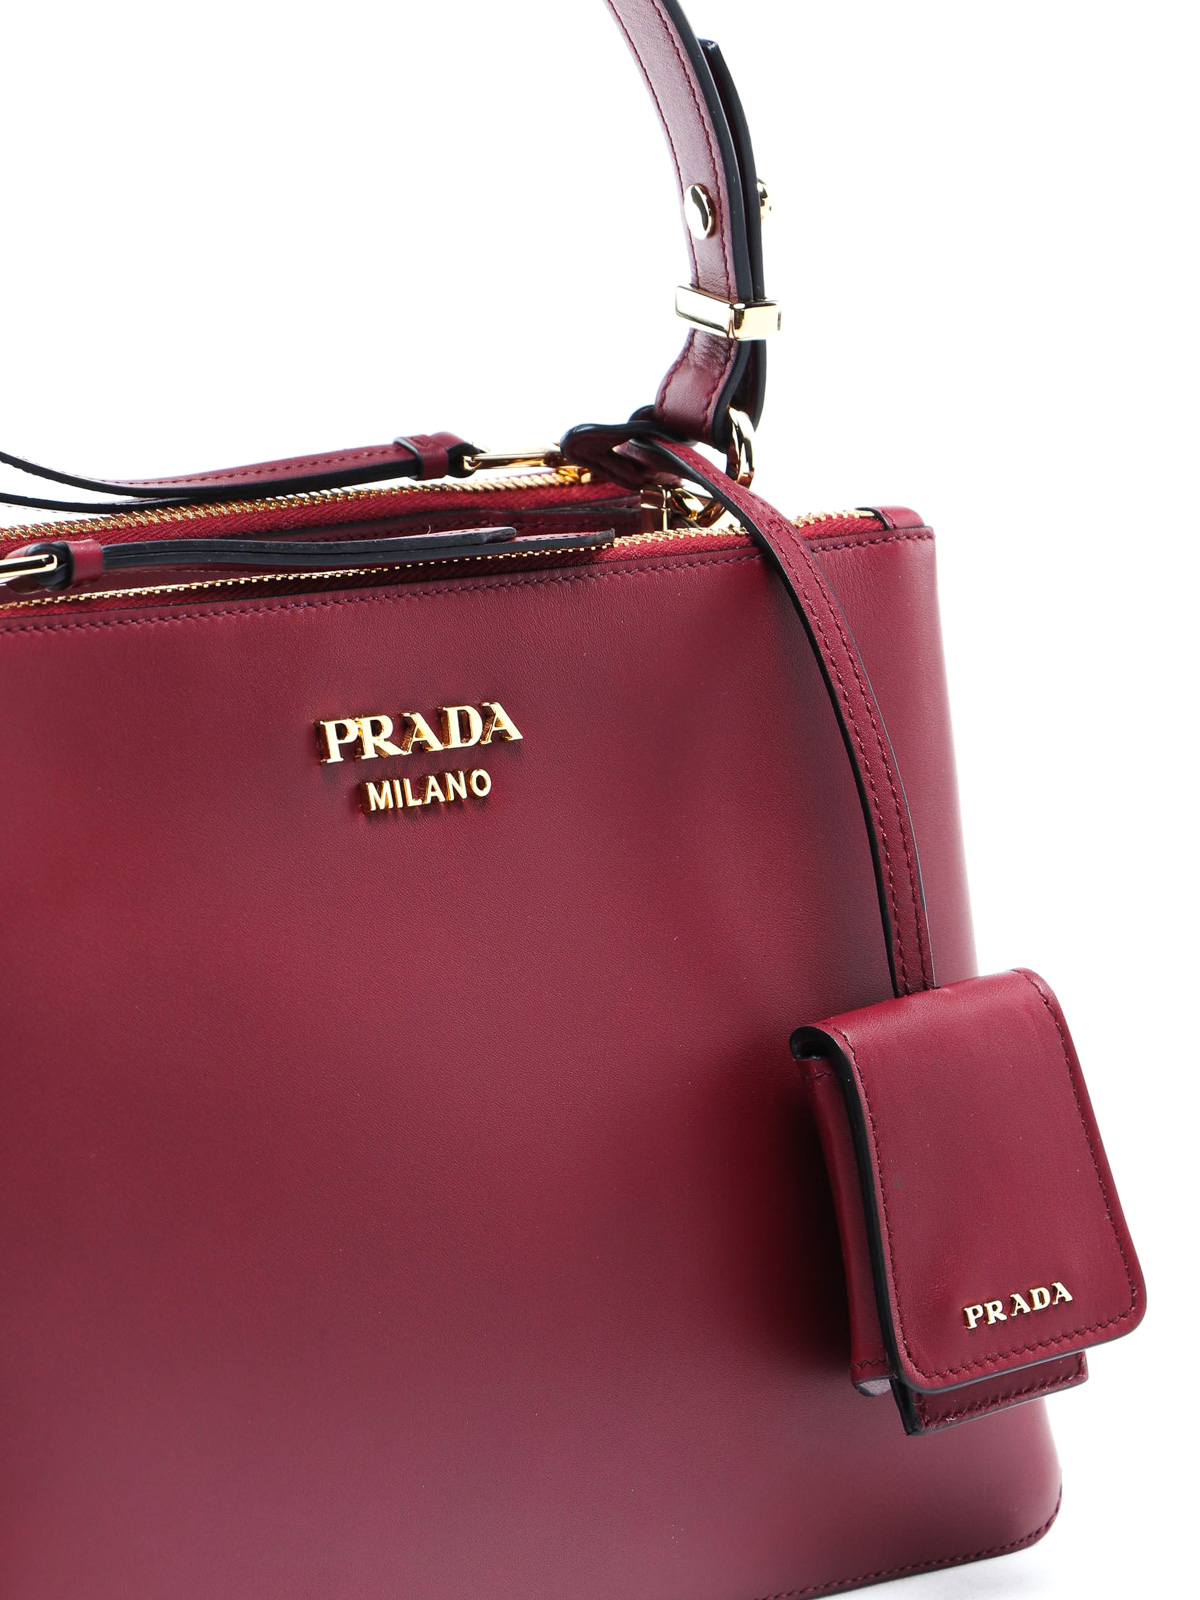 The Classic Saffiano Prada bag. | Bags, Prada handbags, Prada bag